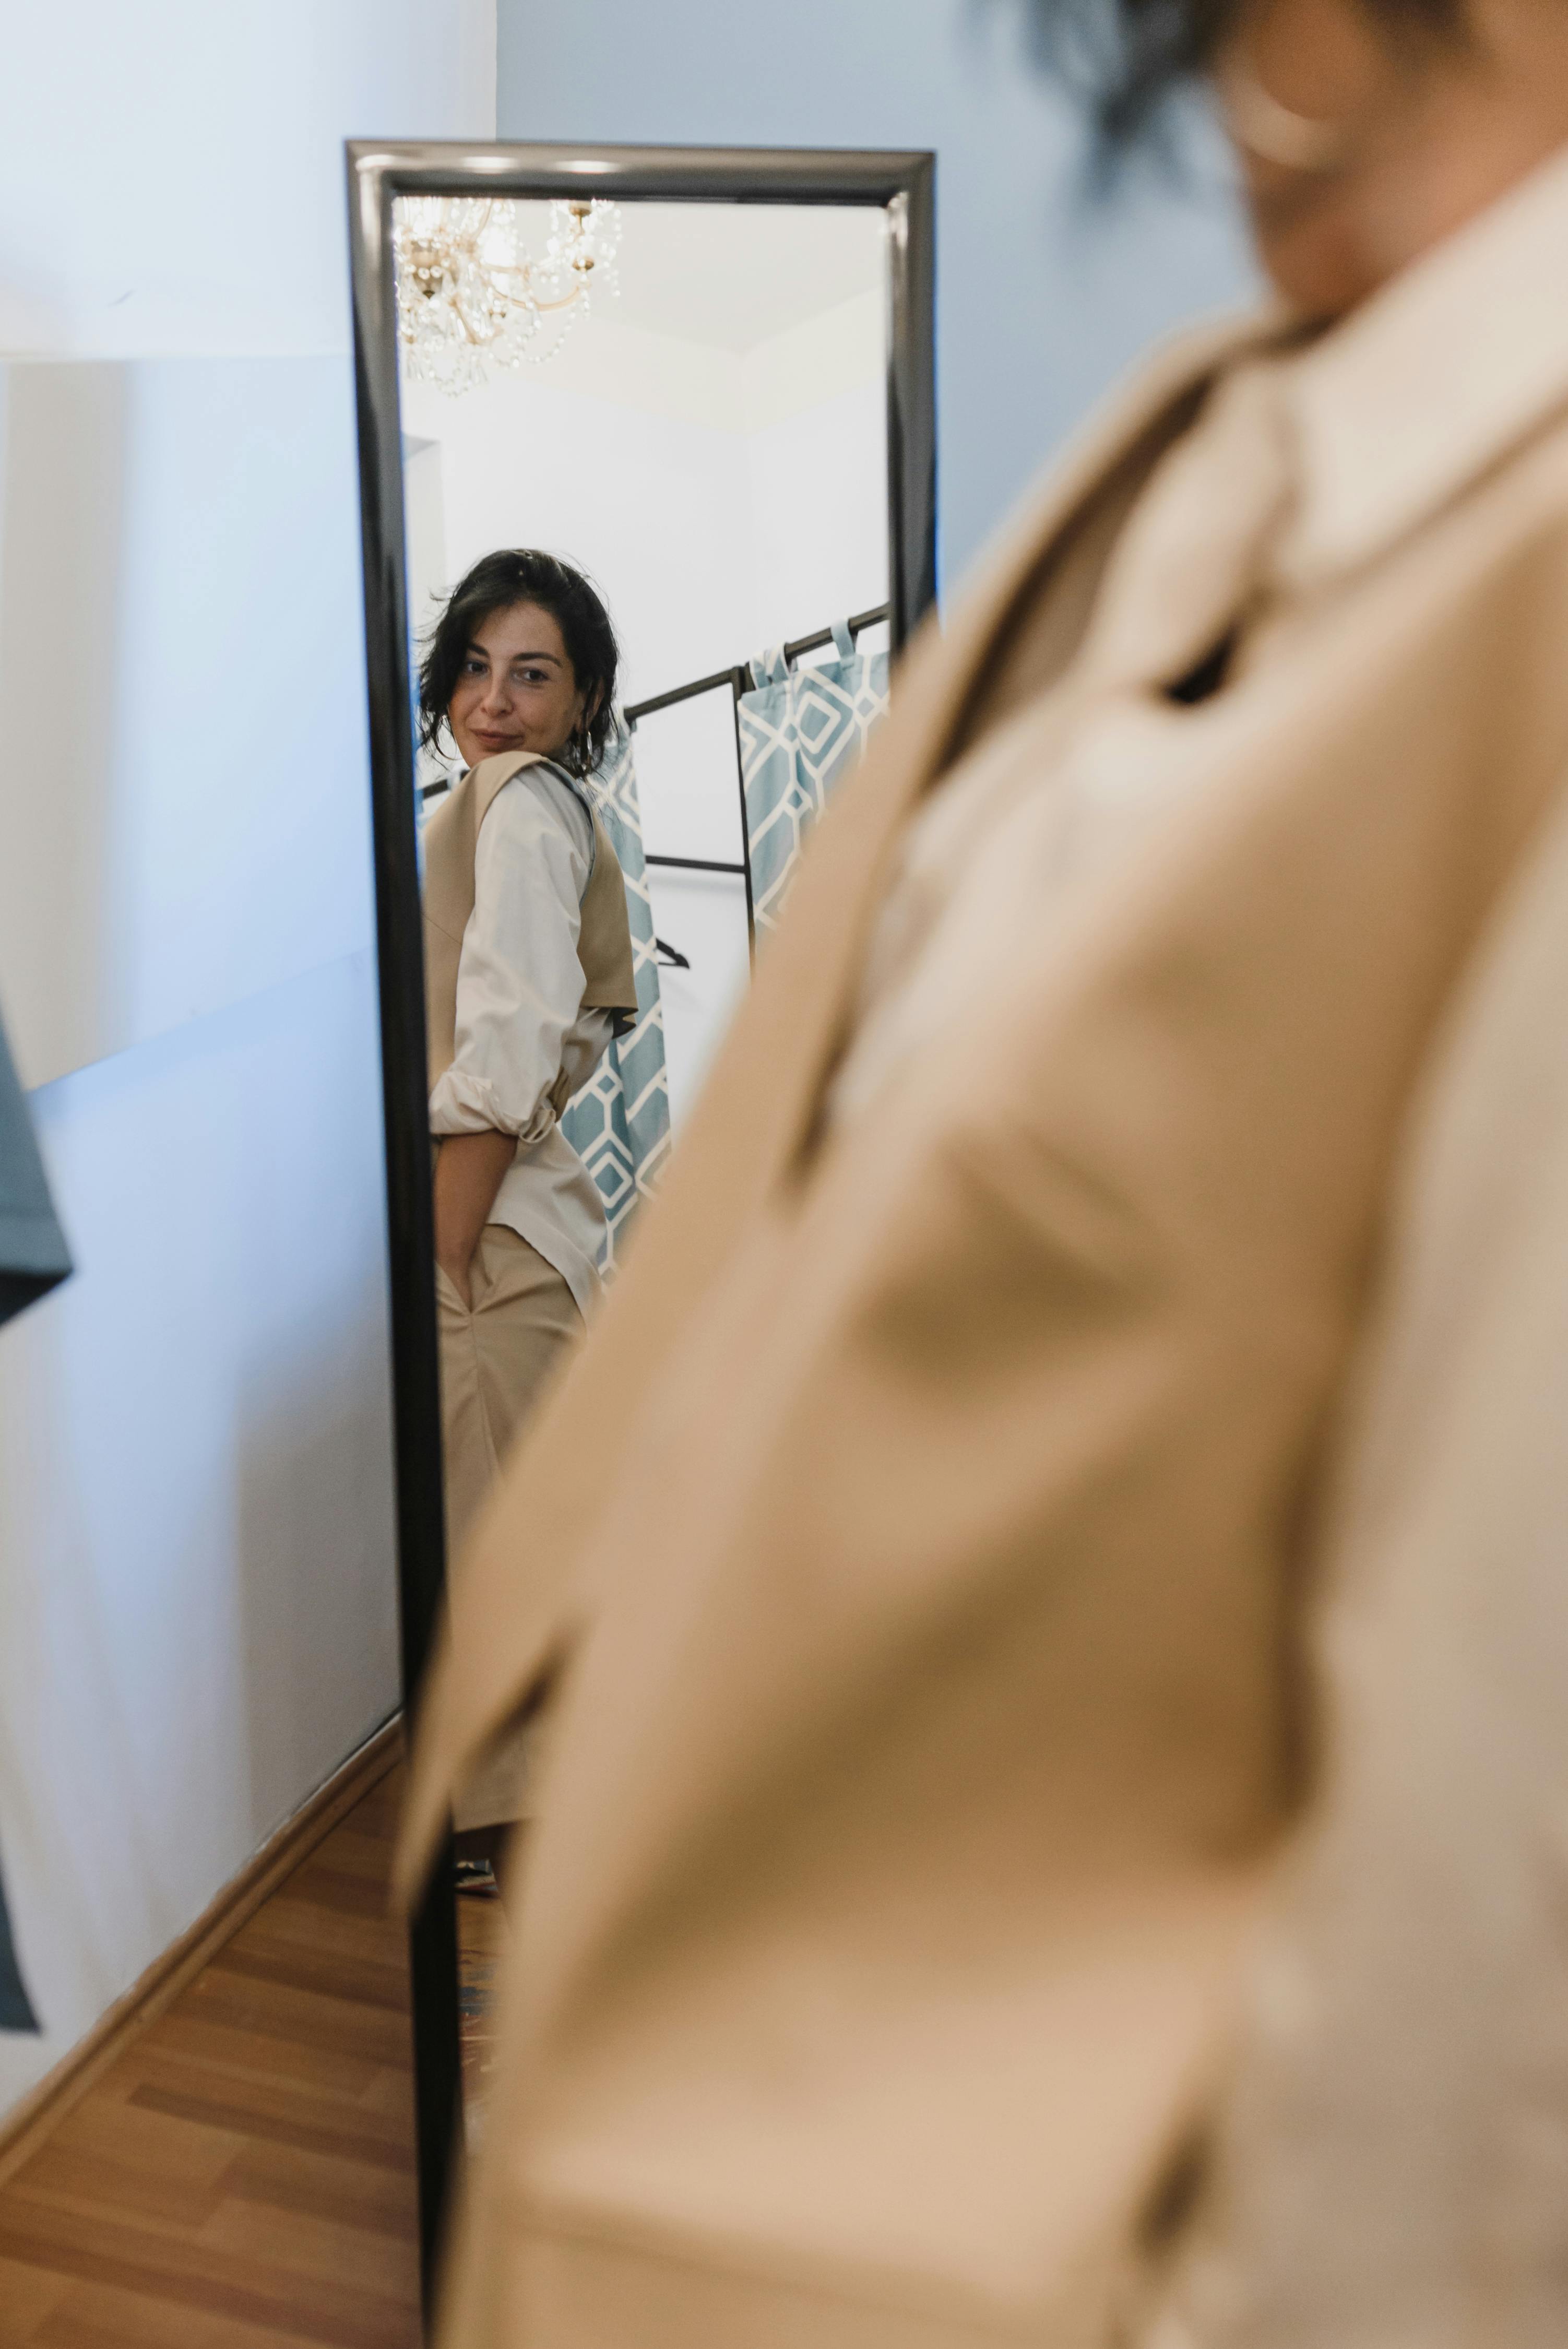 Une femme vérifie sa tenue dans le miroir. À des fins d'illustration uniquement | Source : Pexels